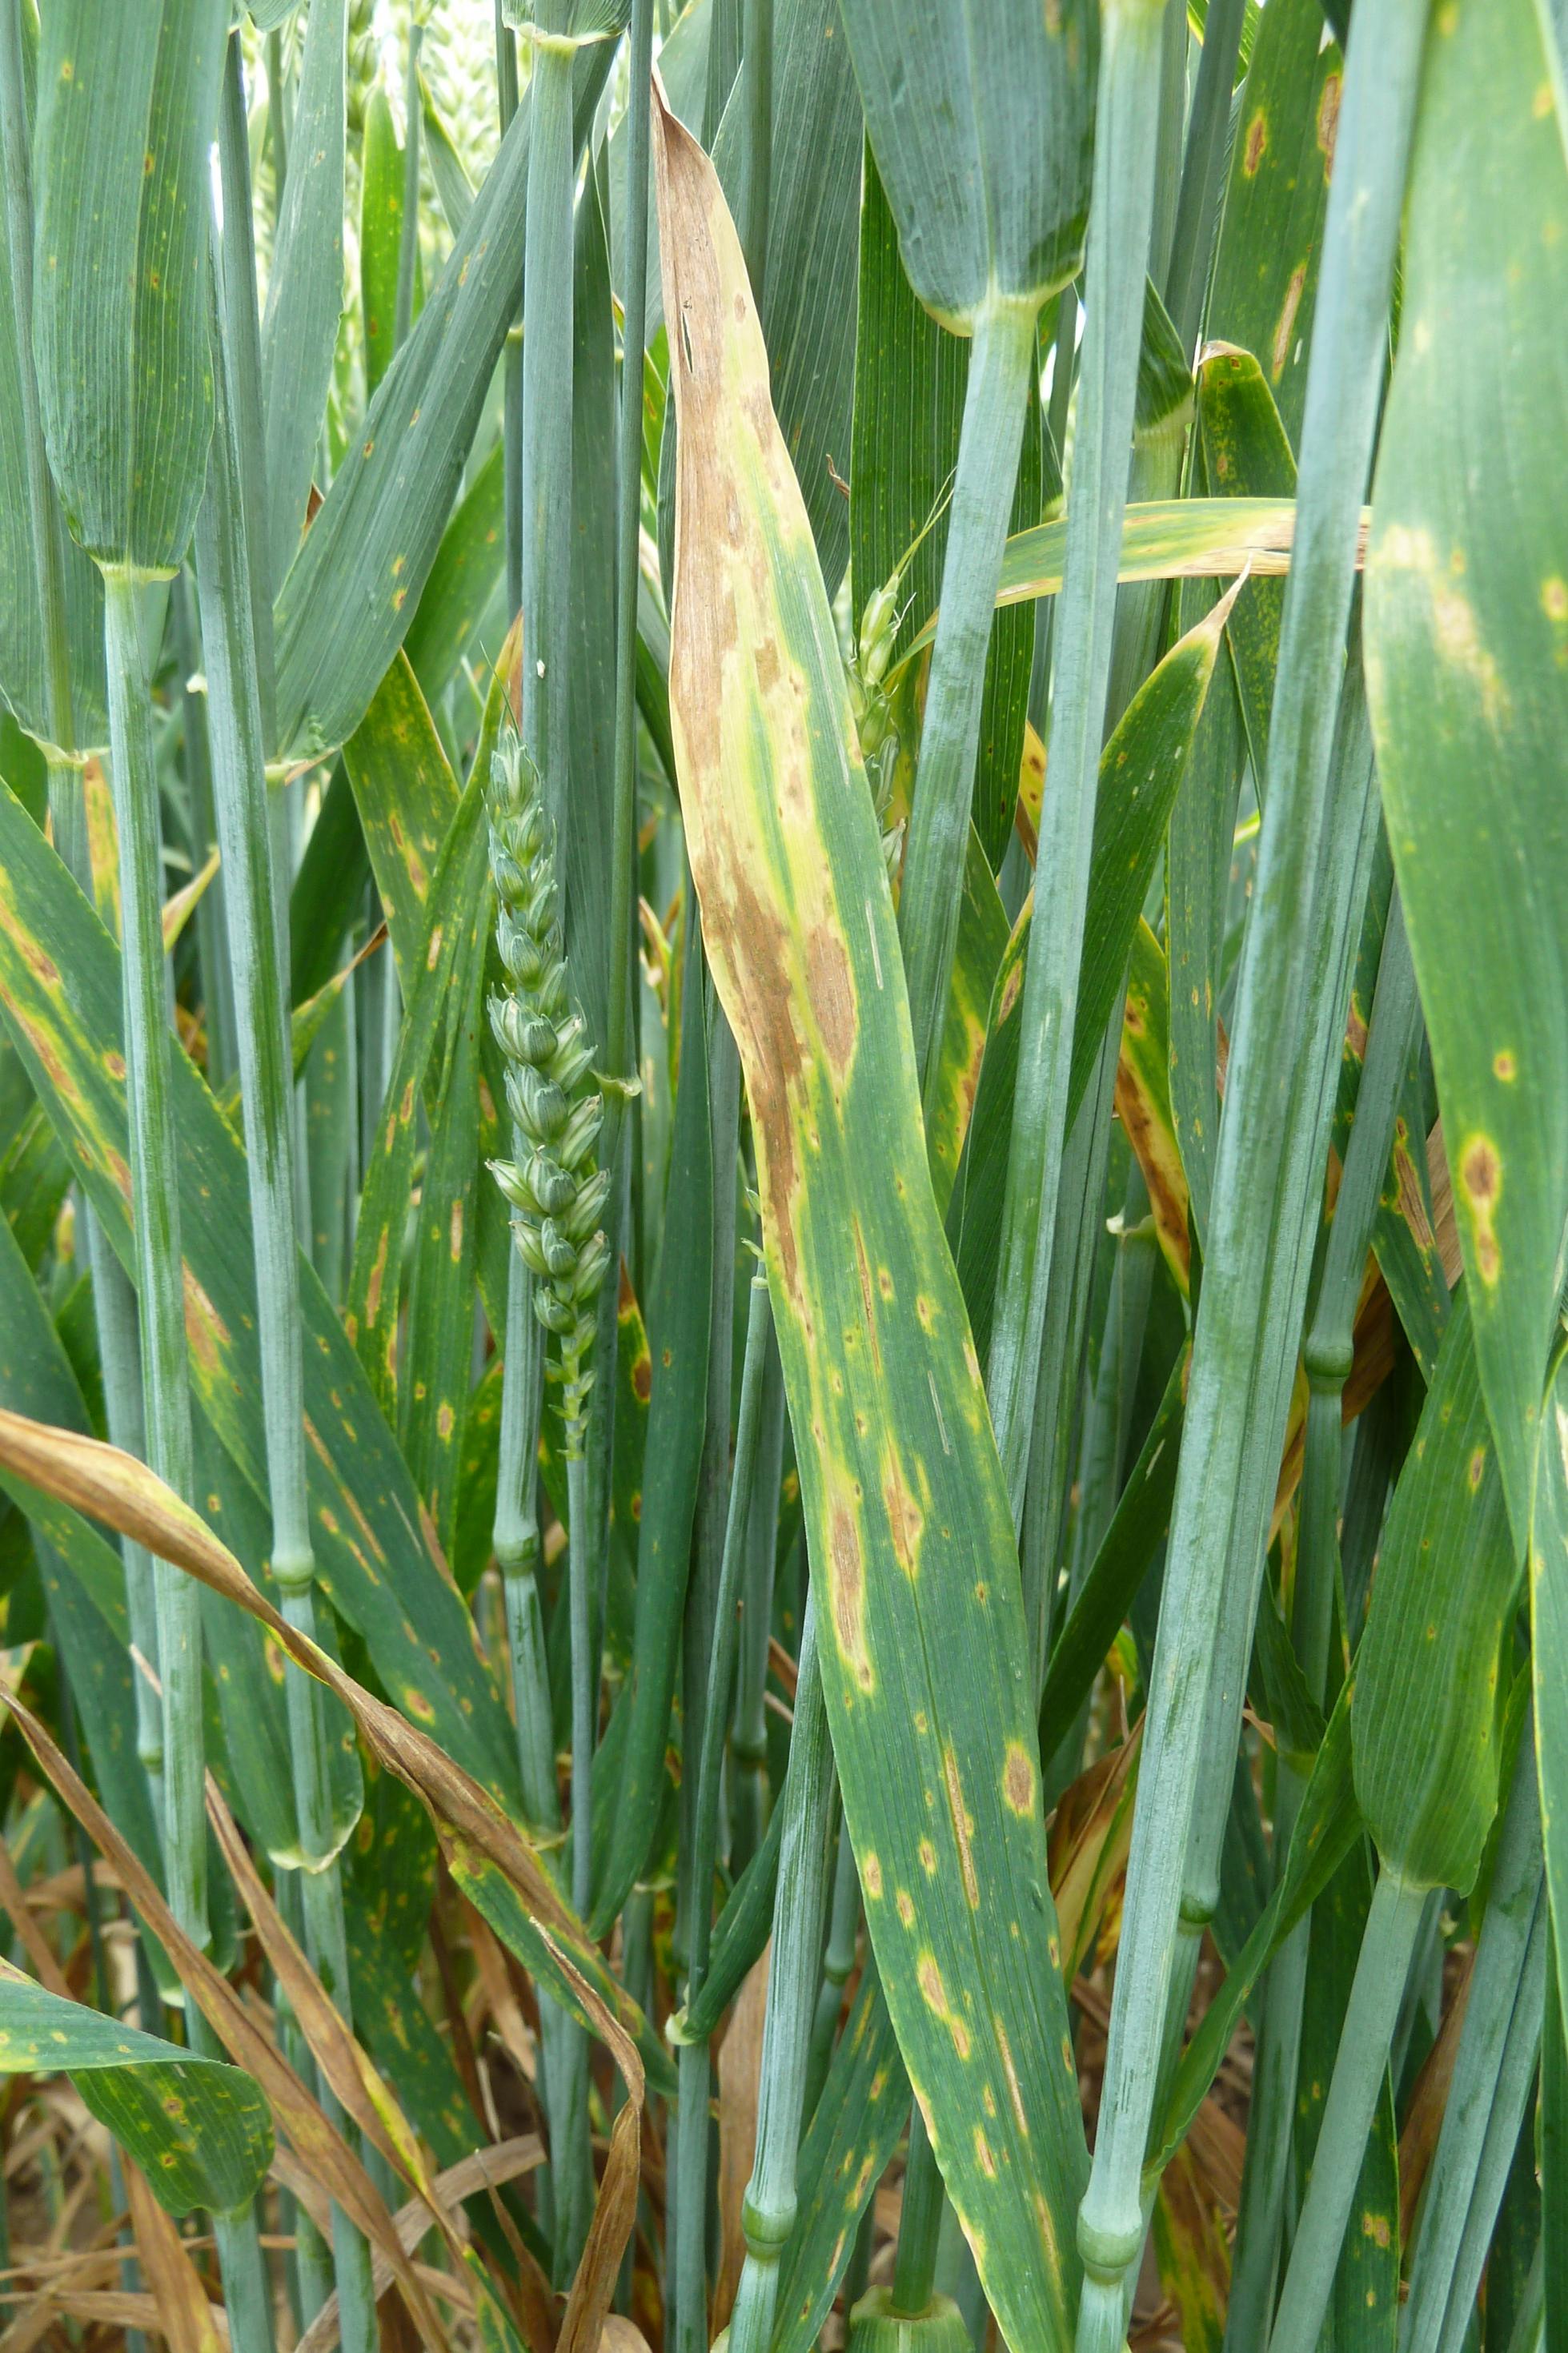 Der Befall mit Septoria hinterlässt gelbe Flecken auf den Pflanzenblättern, hier ist Weizen betroffen.